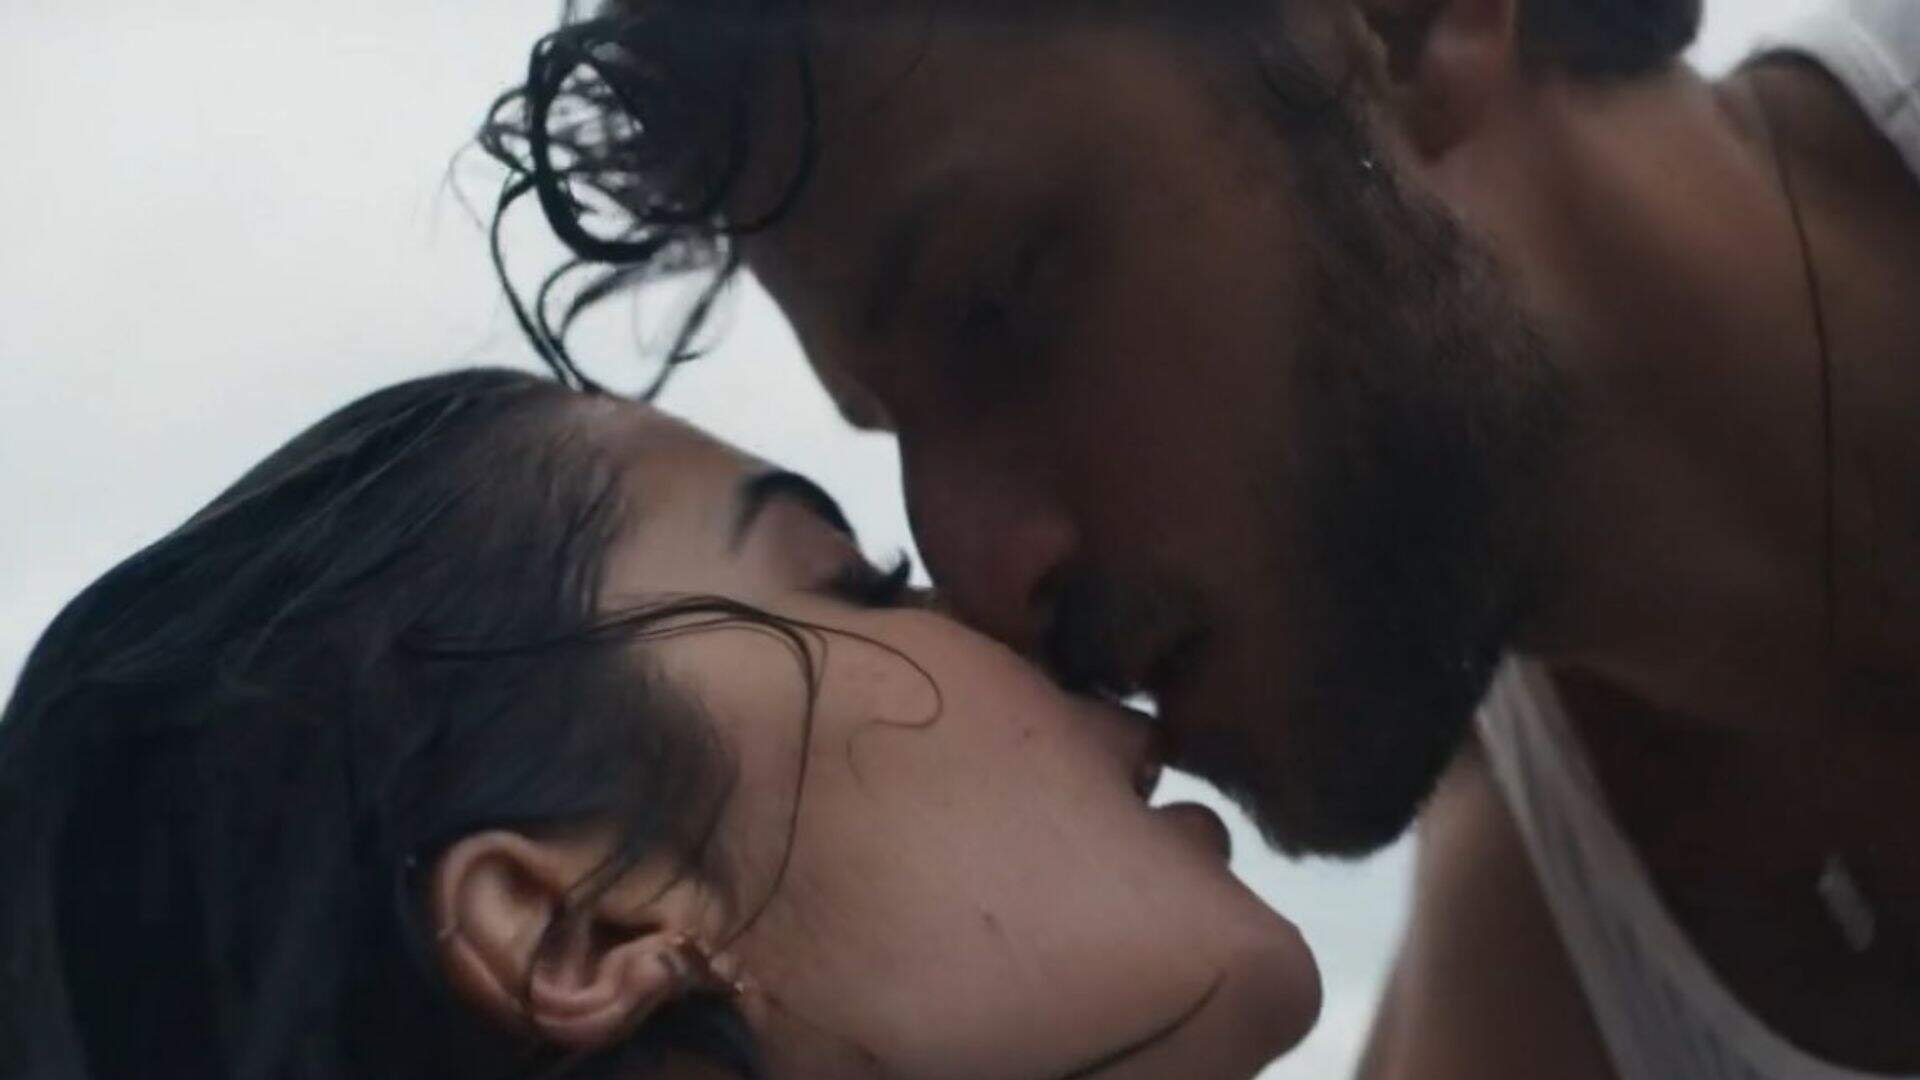 Internautas ficam sem ar após primeira cena de sexo entre Chiara e Ari em “Travessia” - Metropolitana FM